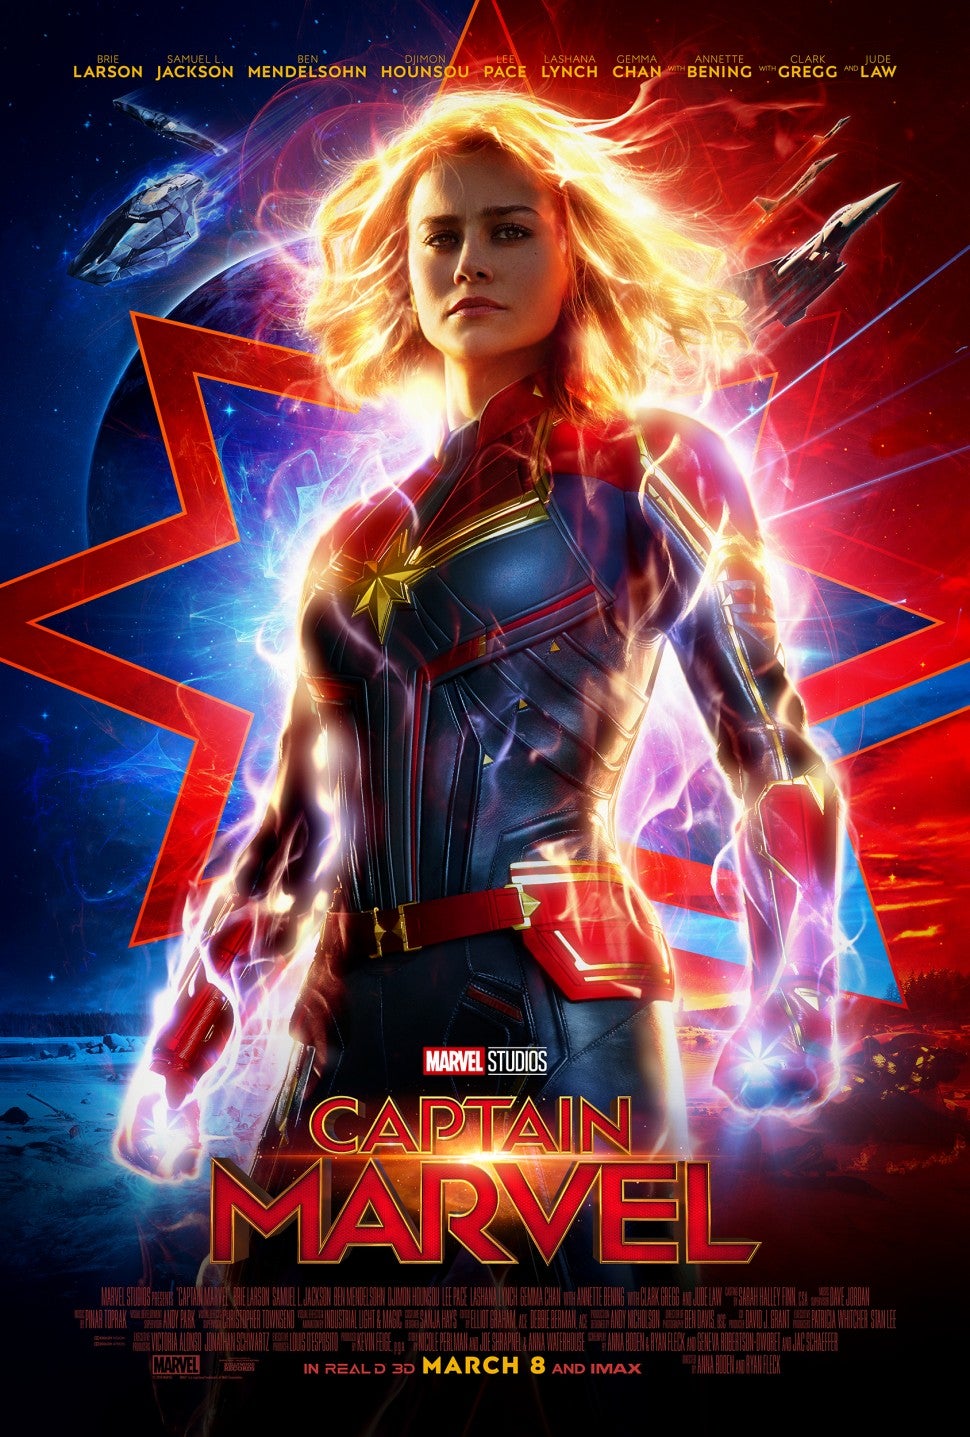 'Captain Marvel' poster